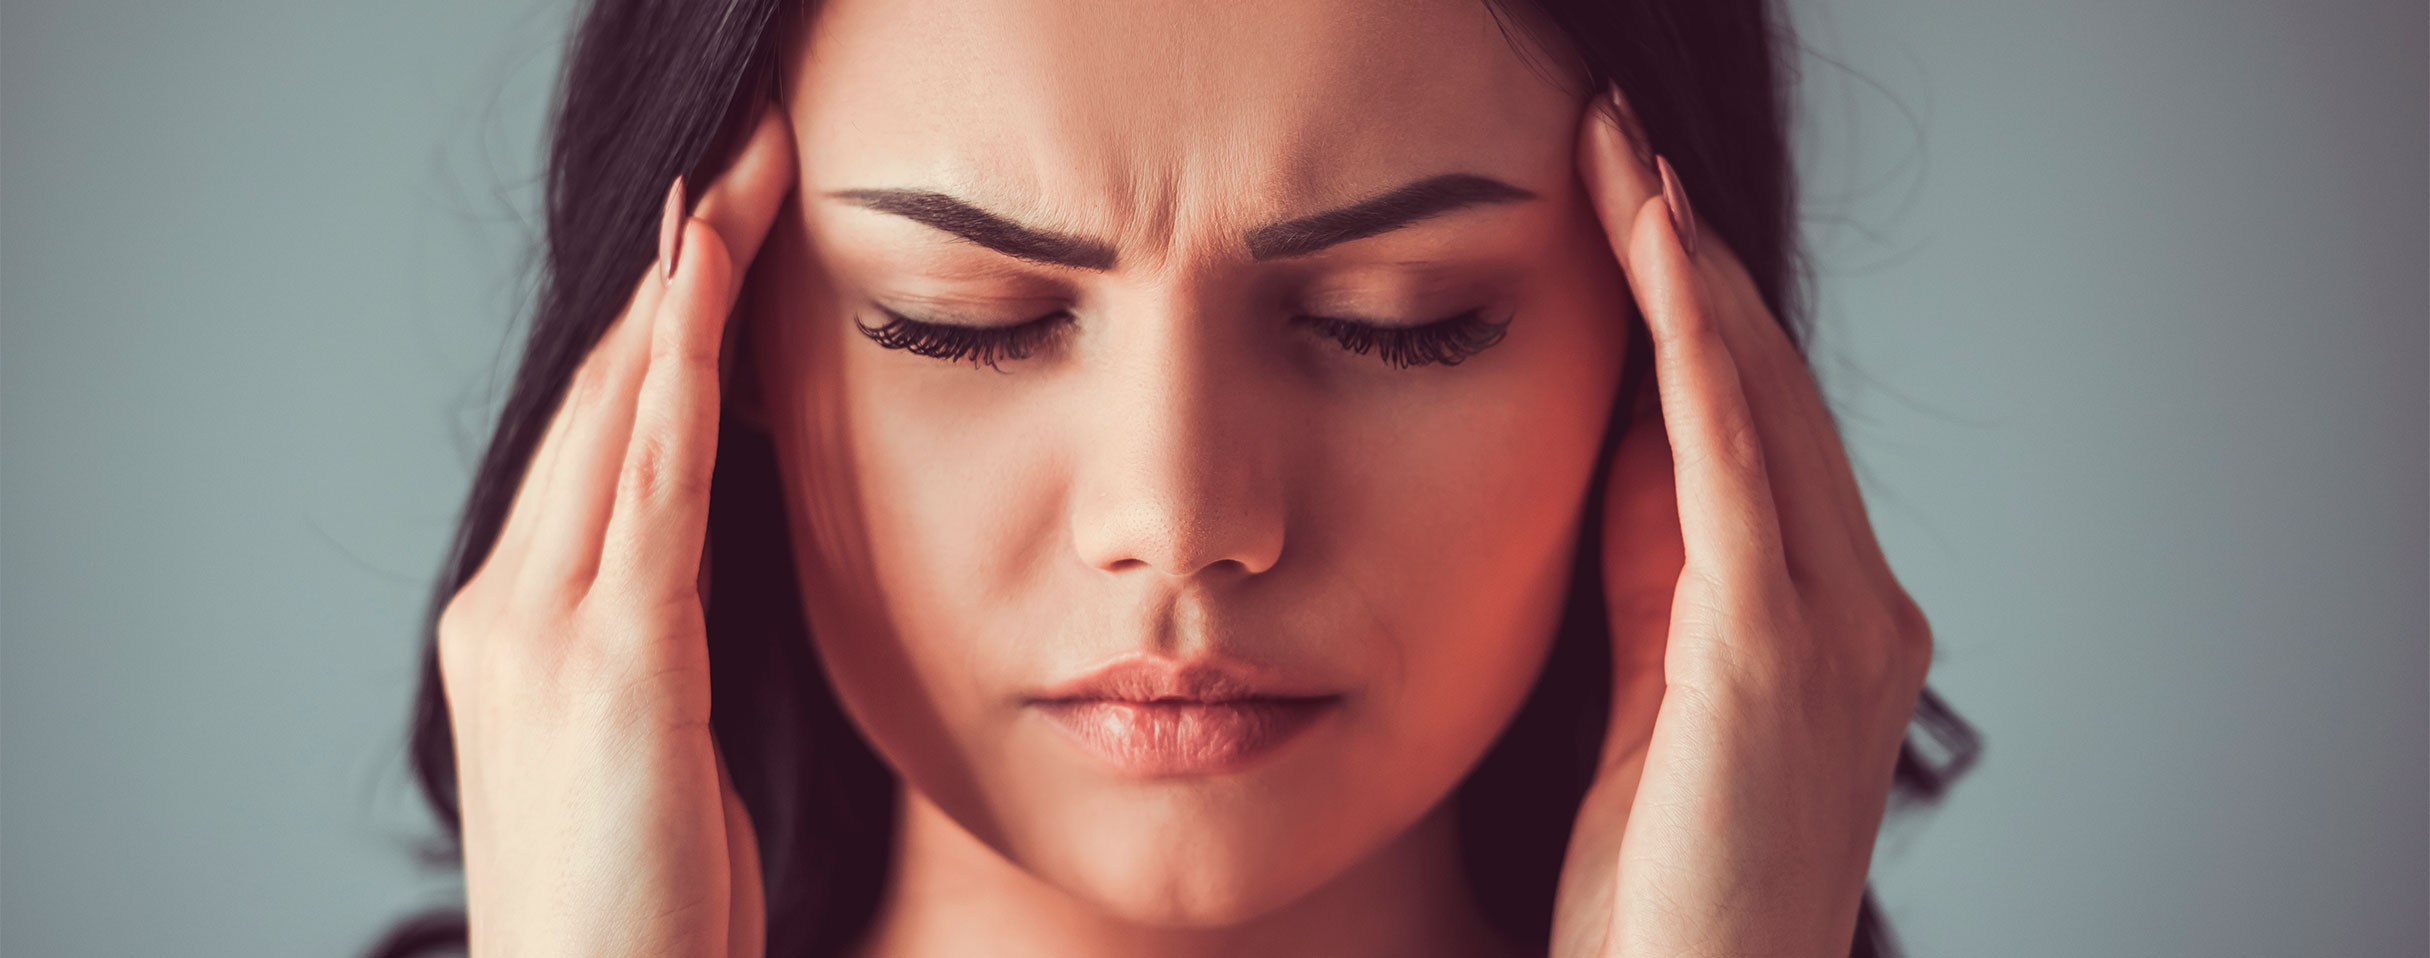 Opmerkelijke oorzaken van hoofdpijn